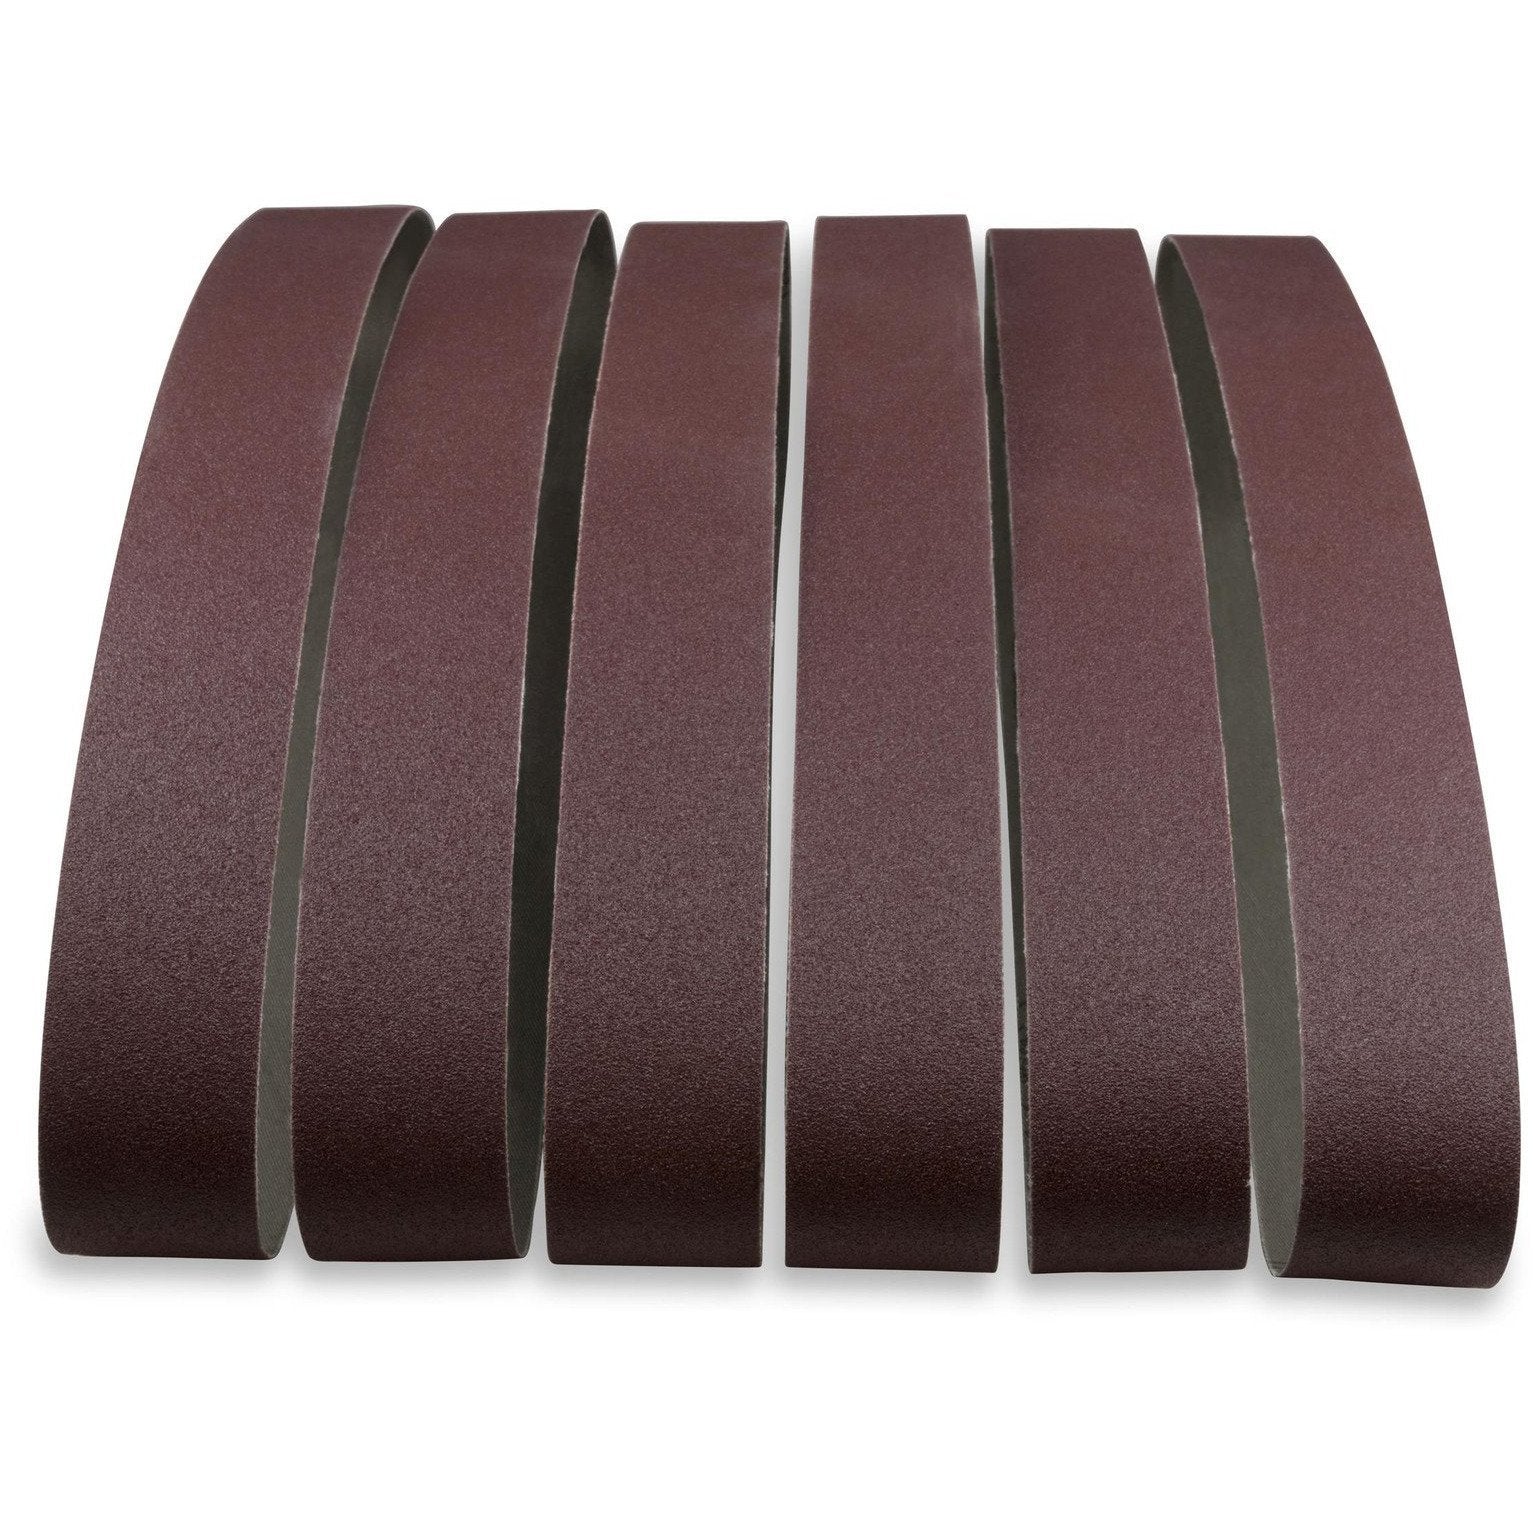 1 X 42 Inch Aluminum Oxide Metal Sanding Belts, 12 Pack - Red Label Abrasives